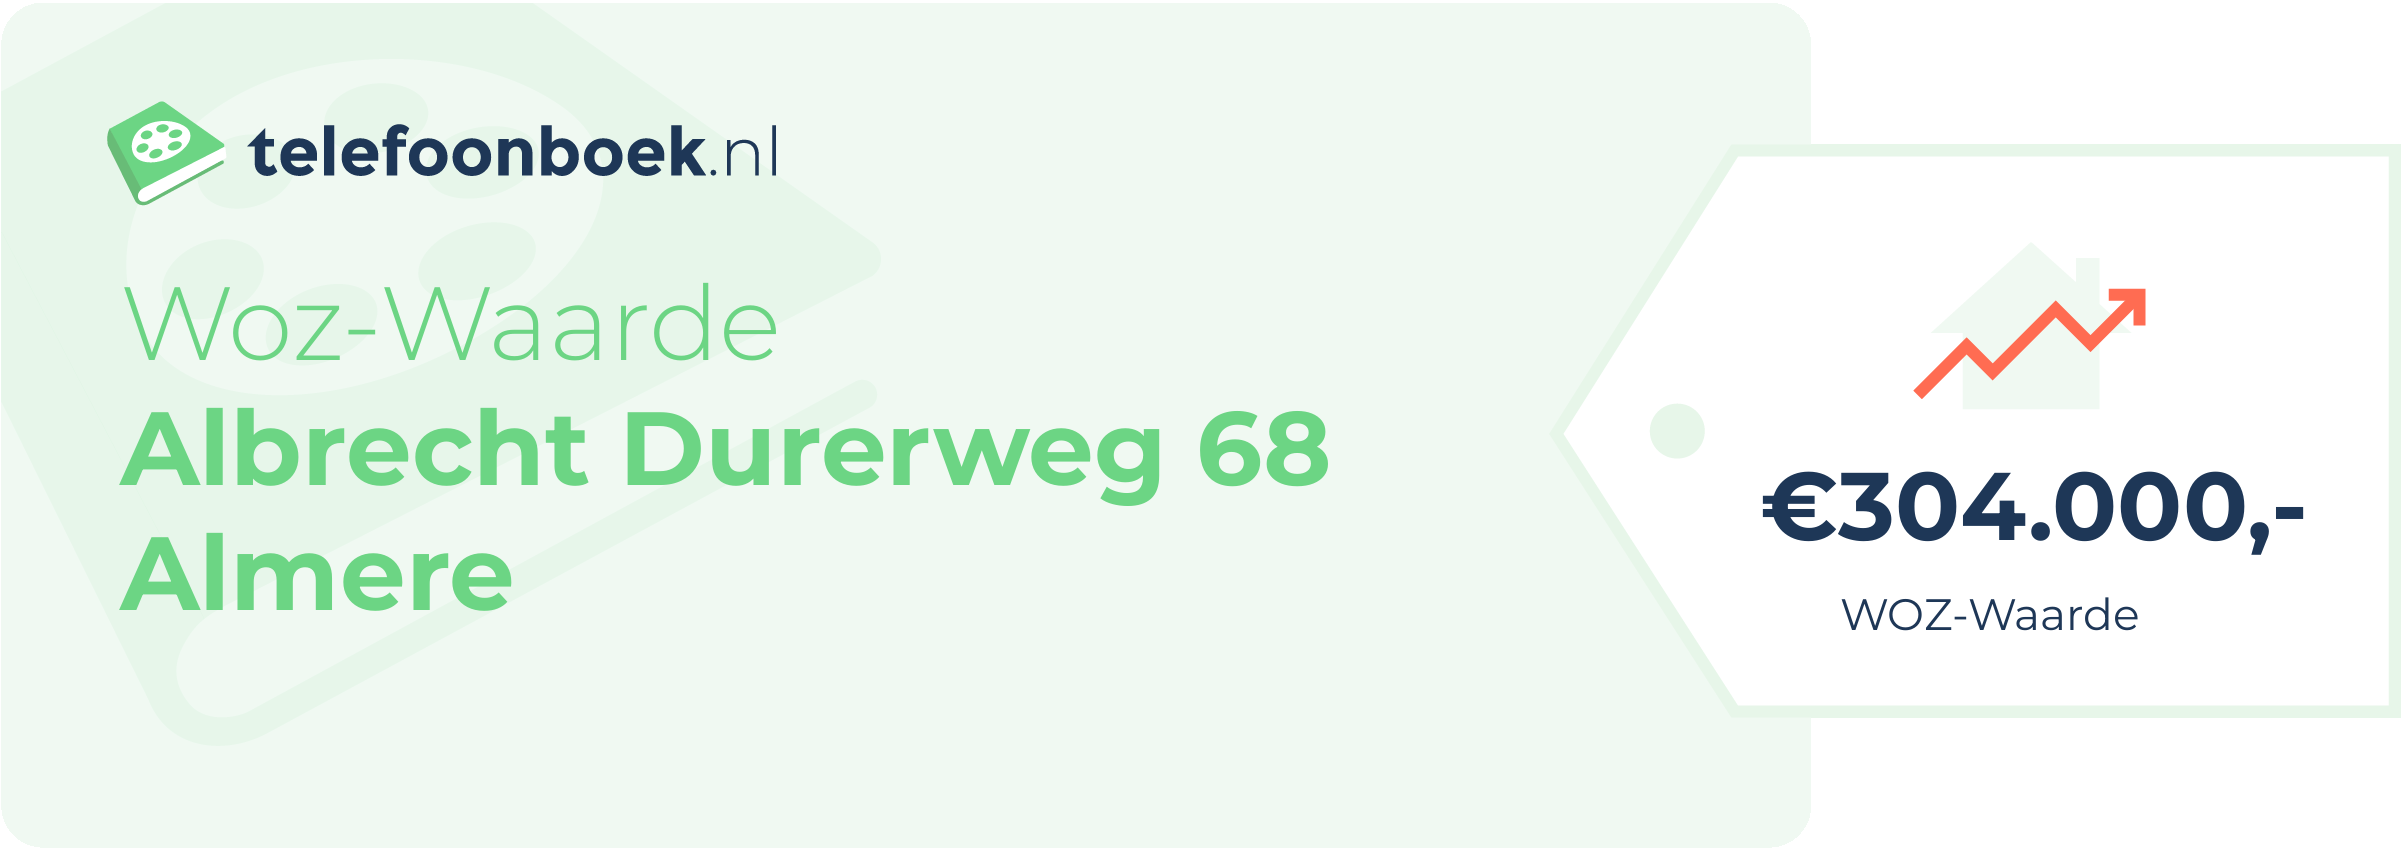 WOZ-waarde Albrecht Durerweg 68 Almere